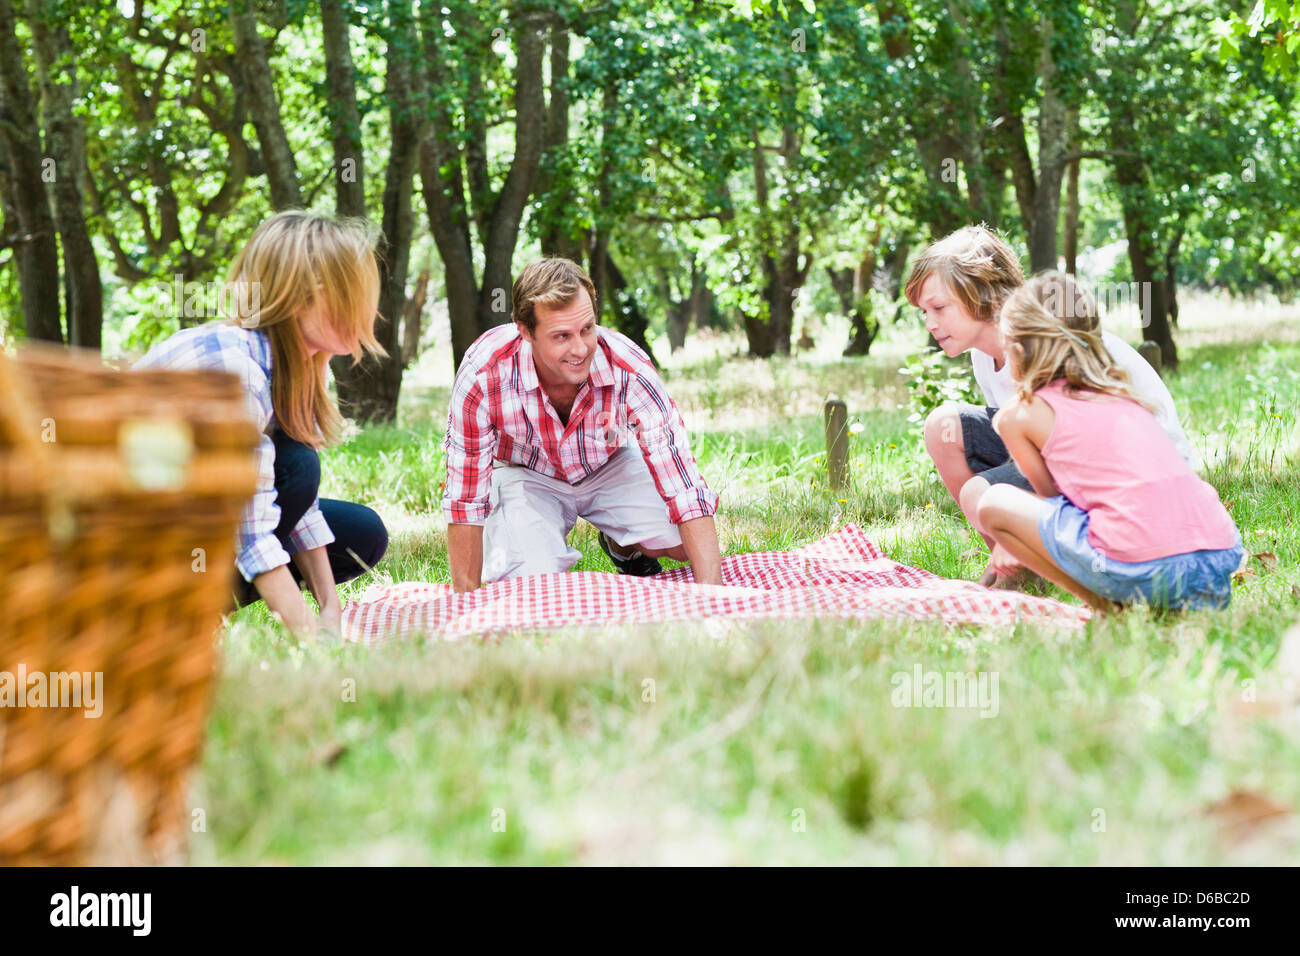 Family having picnic in park Stock Photo